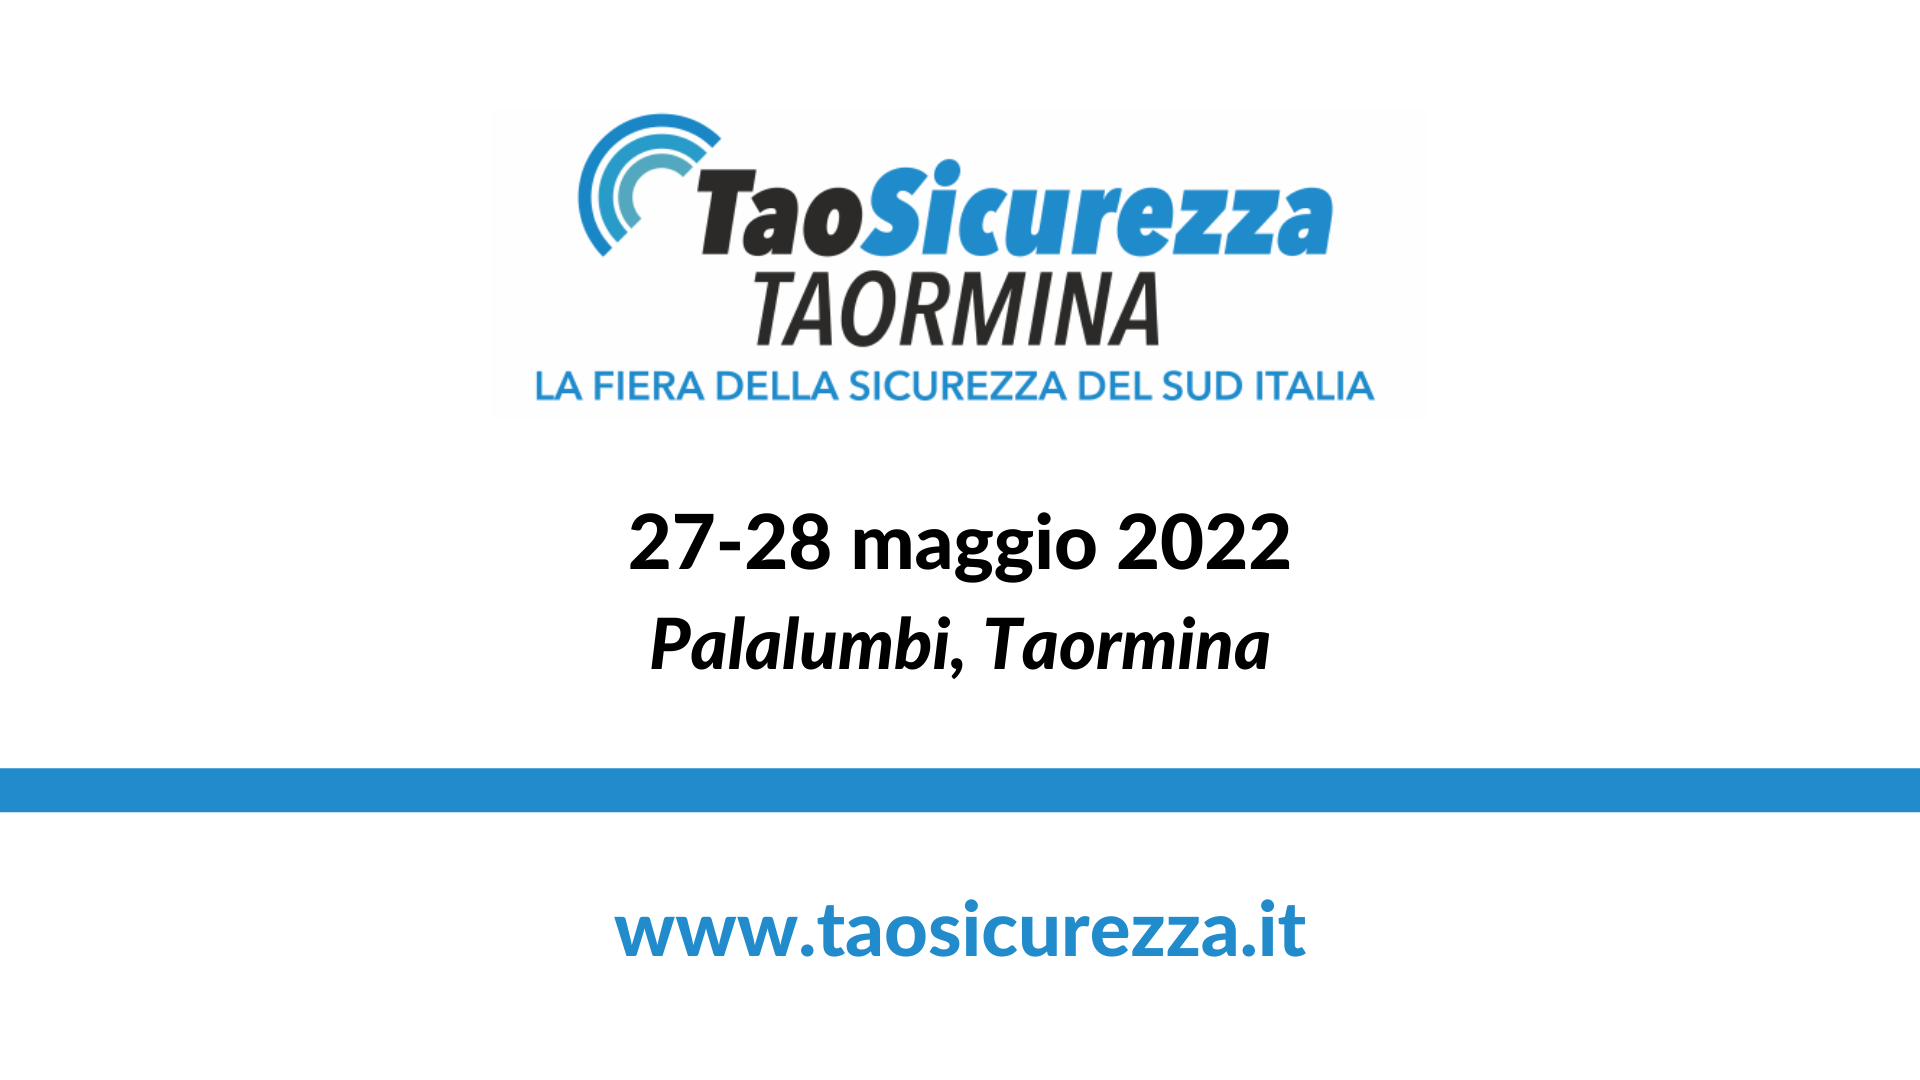 TaoSicurezza Taormina - 27-28 maggio 2022